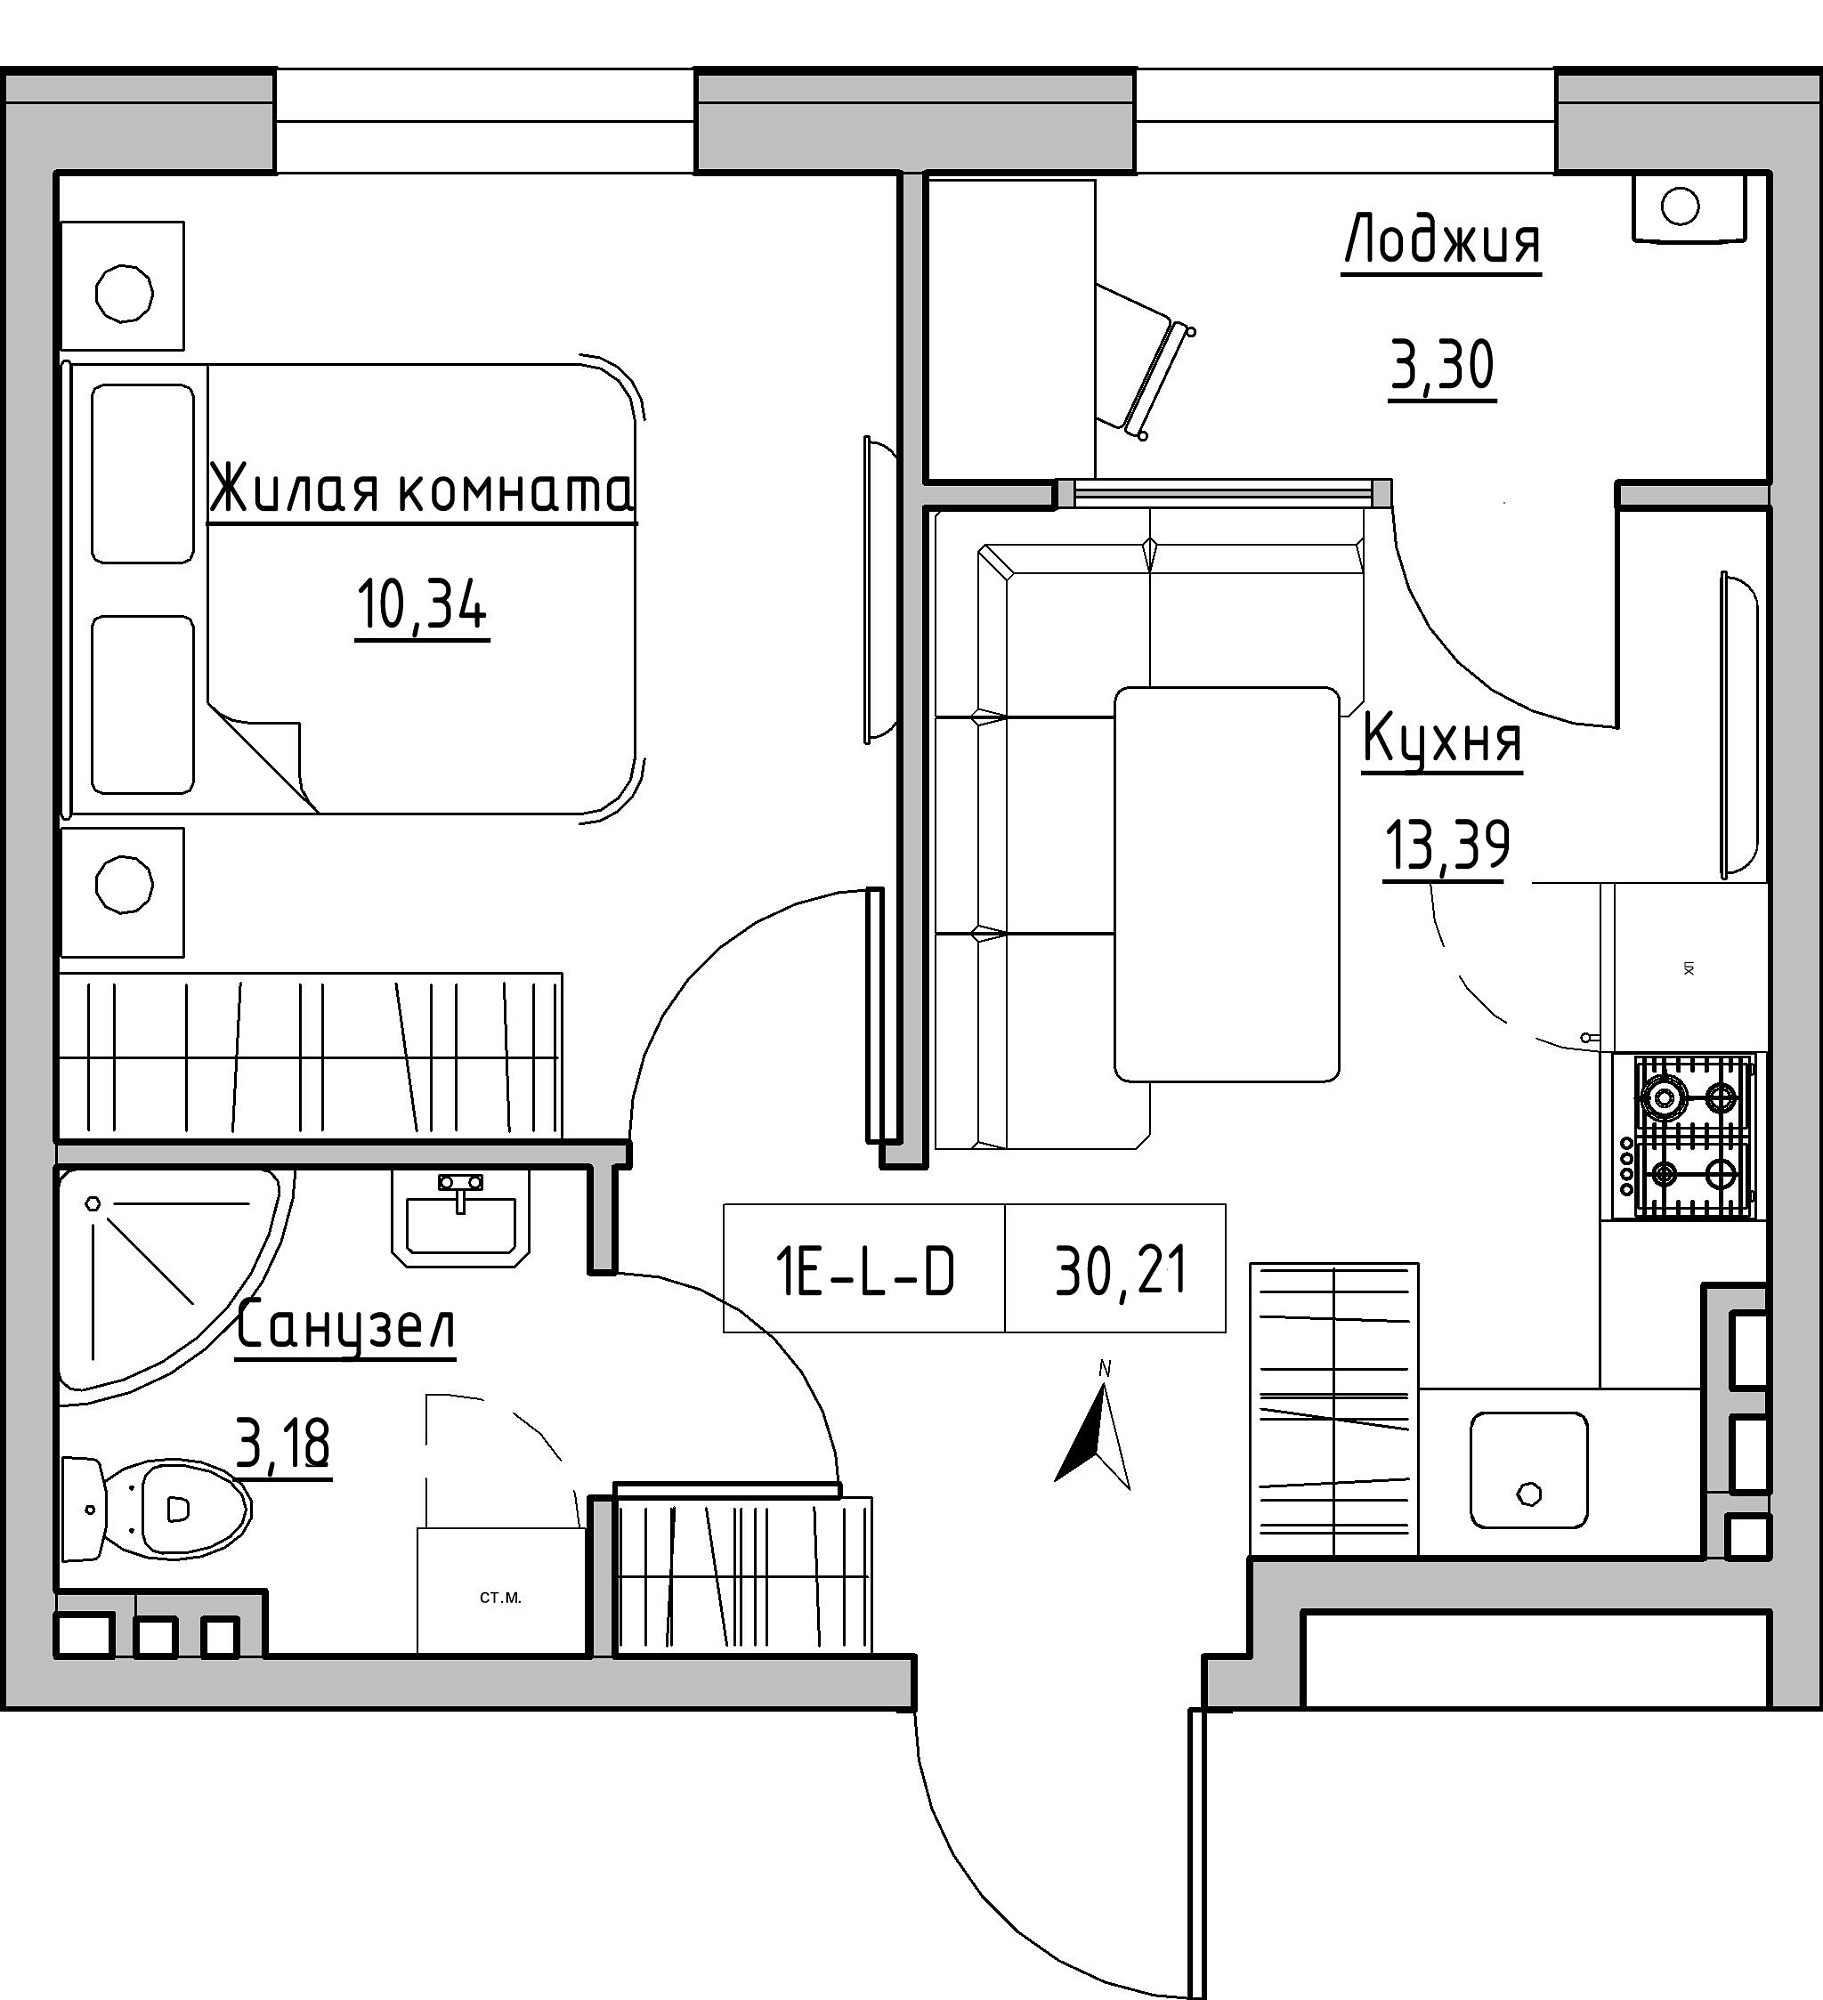 Планування 1-к квартира площею 30.21м2, KS-024-01/0001.